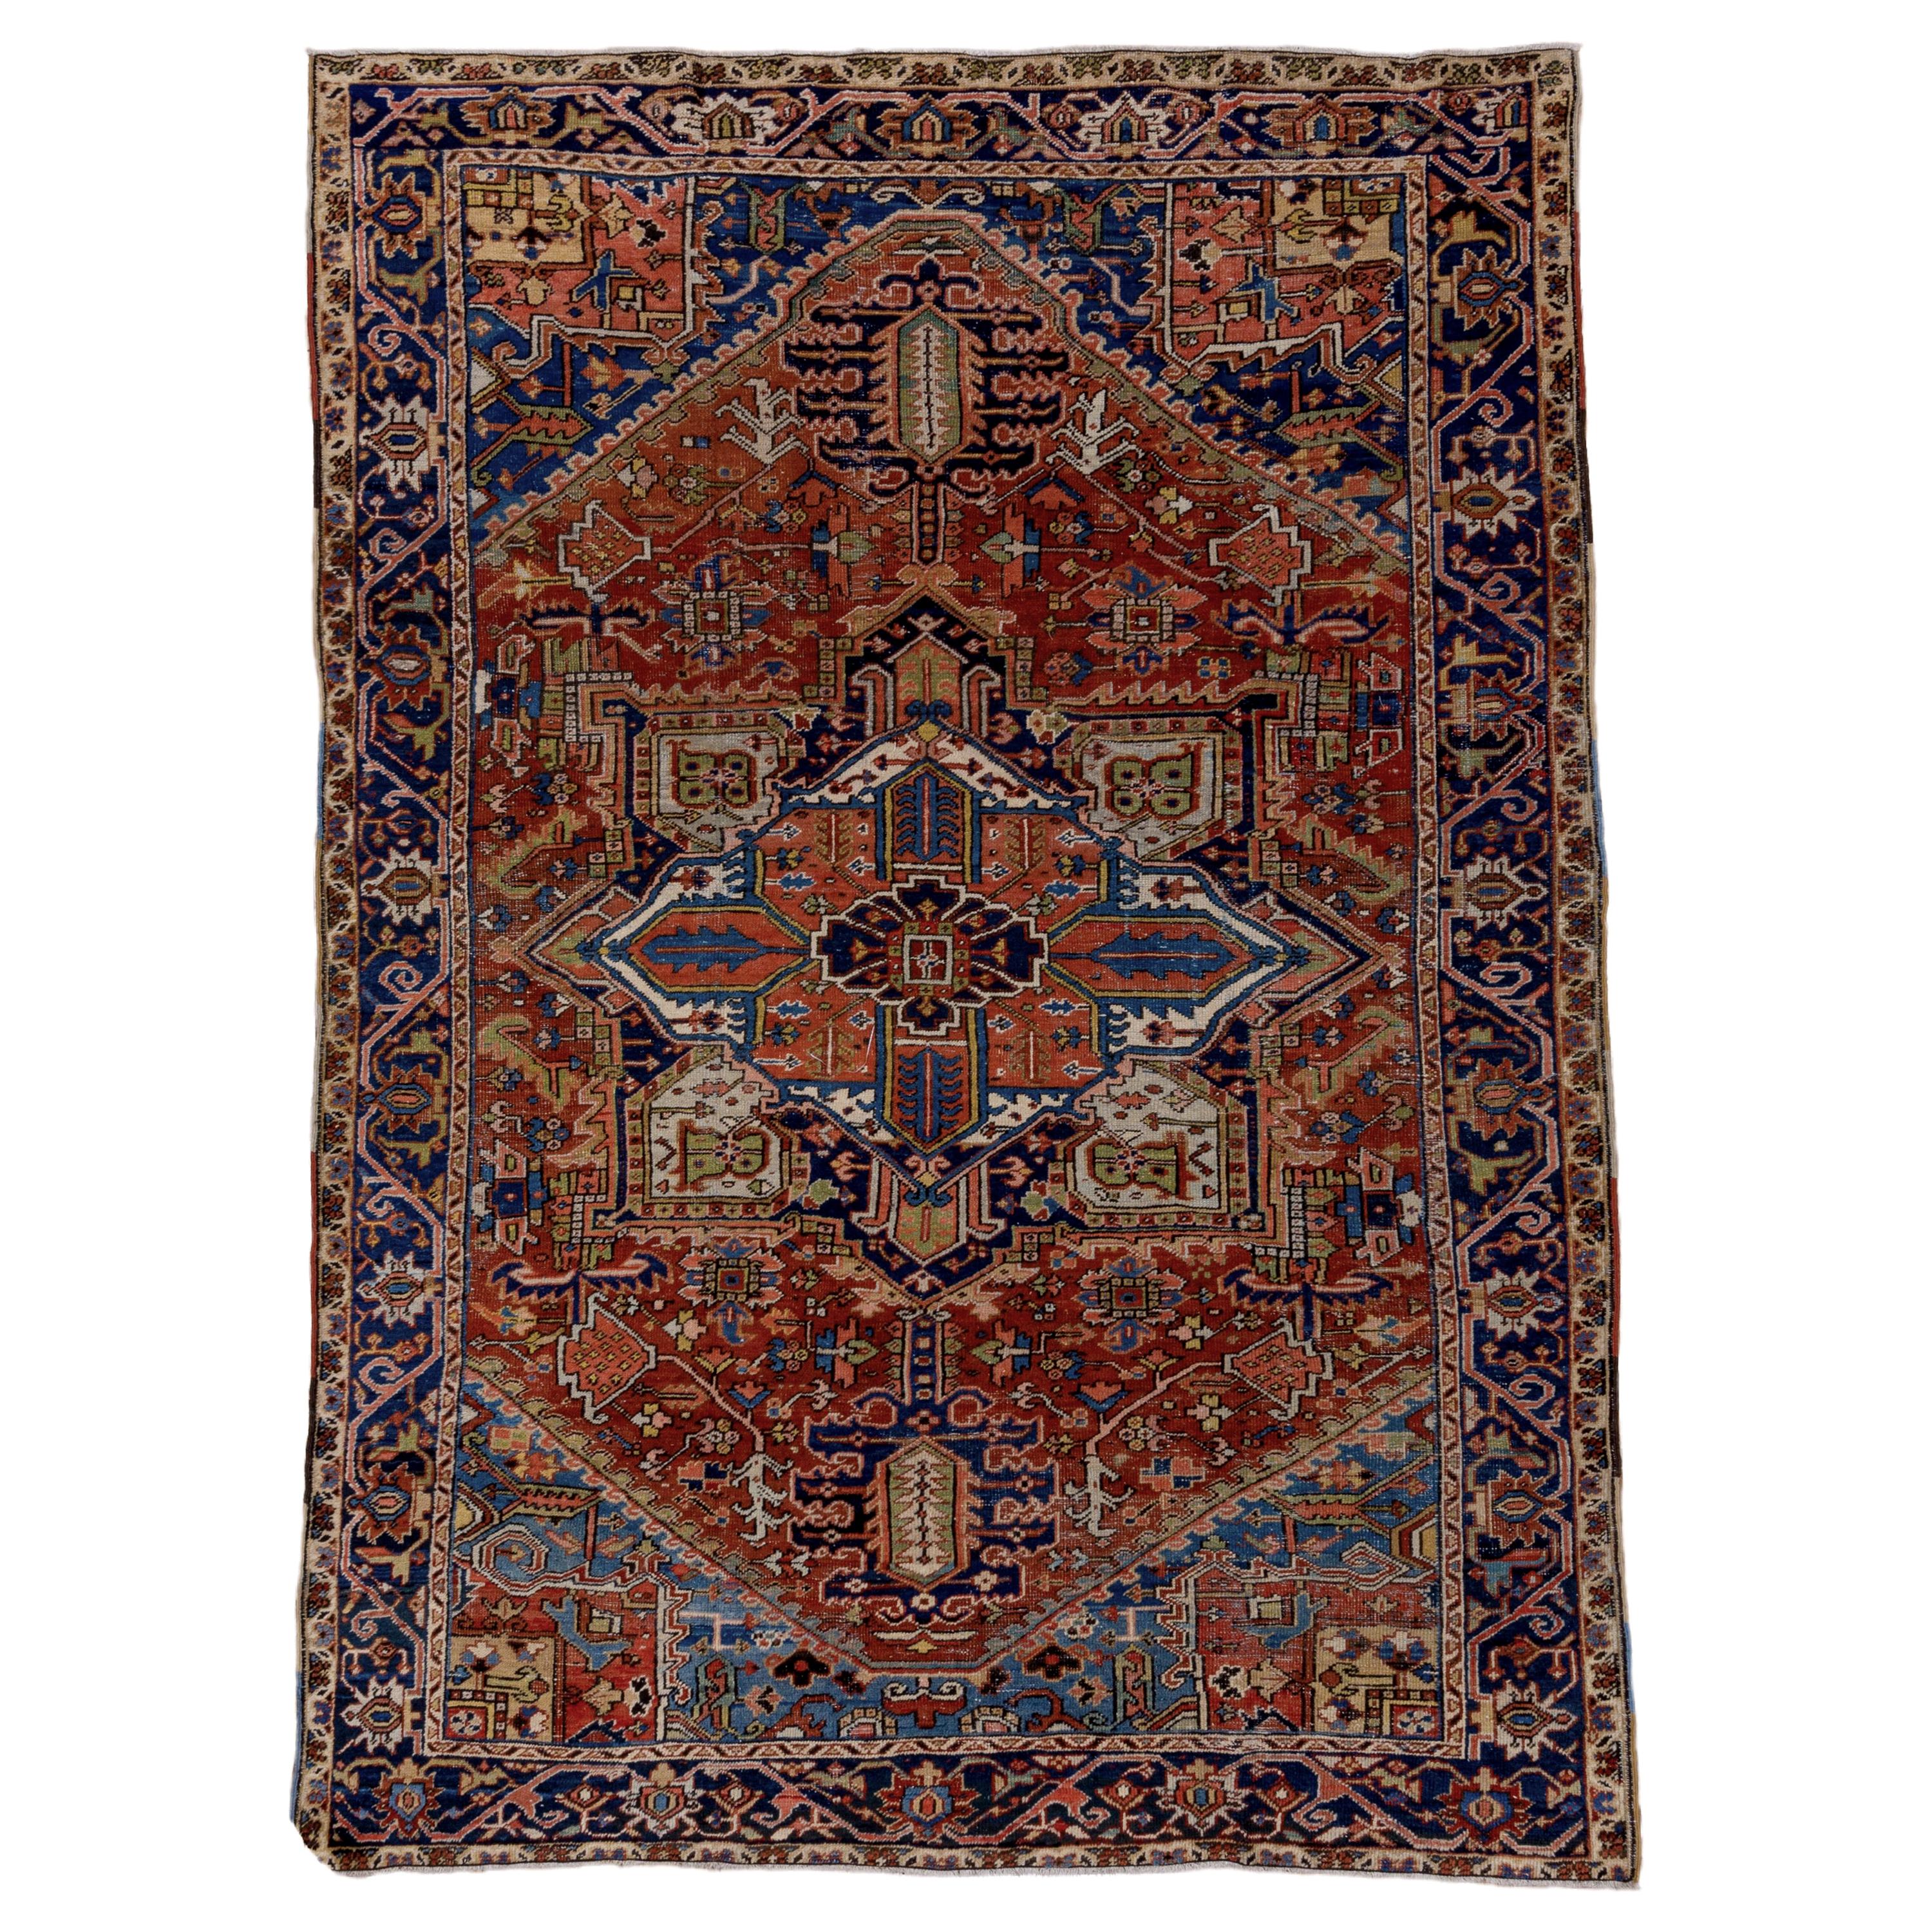 Antique Colorful Persian Heriz Carpet, Rich Colors